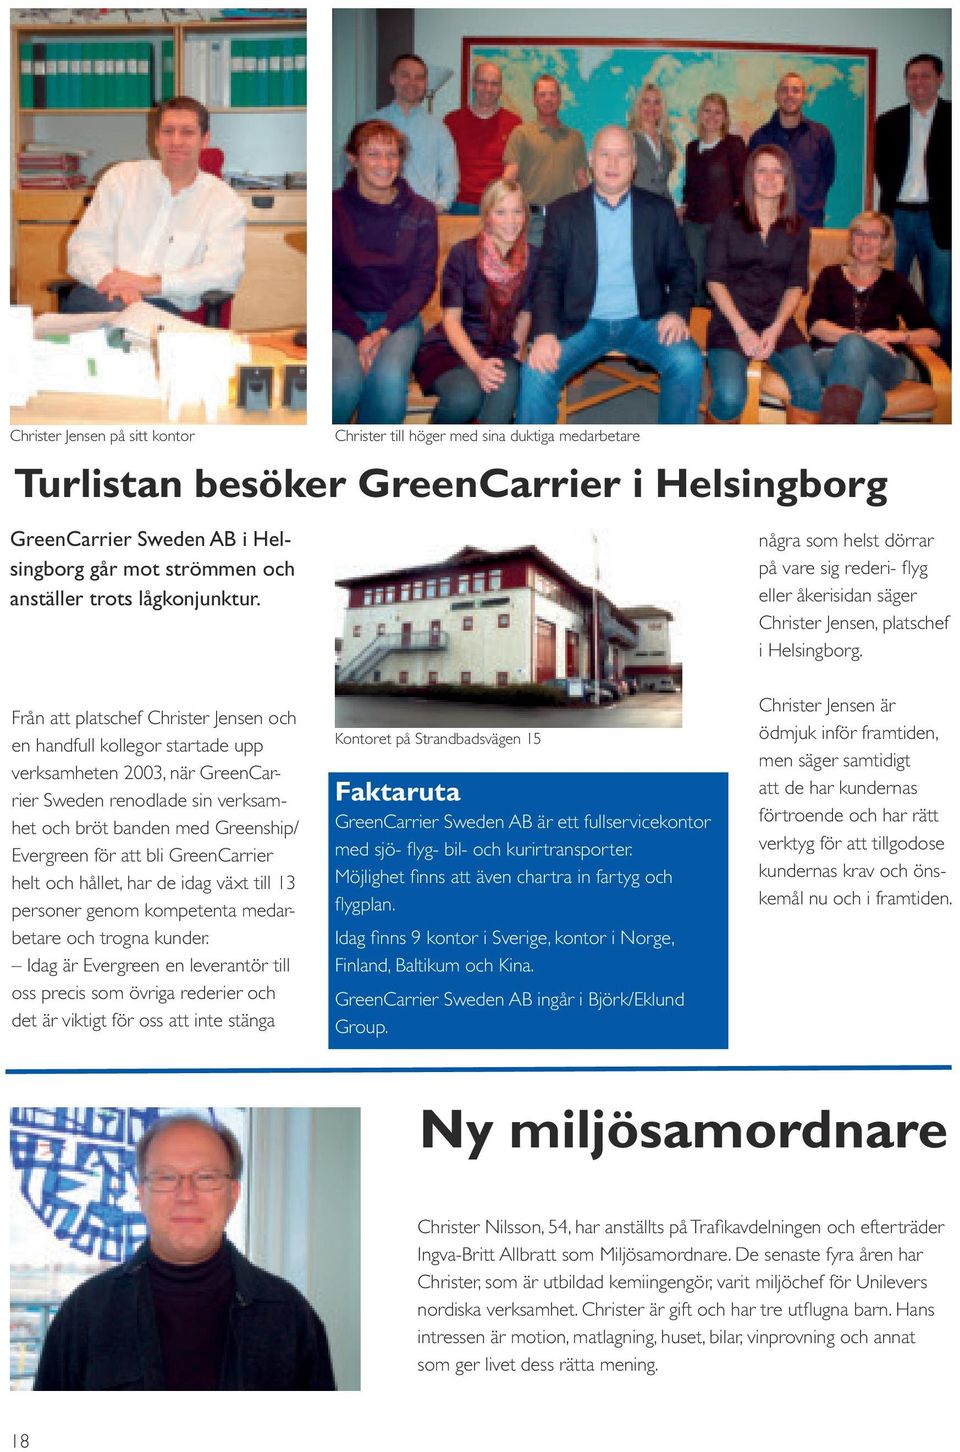 Från att platschef Christer Jensen och en handfull kollegor startade upp verksamheten 2003, när GreenCarrier Sweden renodlade sin verksamhet och bröt banden med Greenship/ Evergreen för att bli